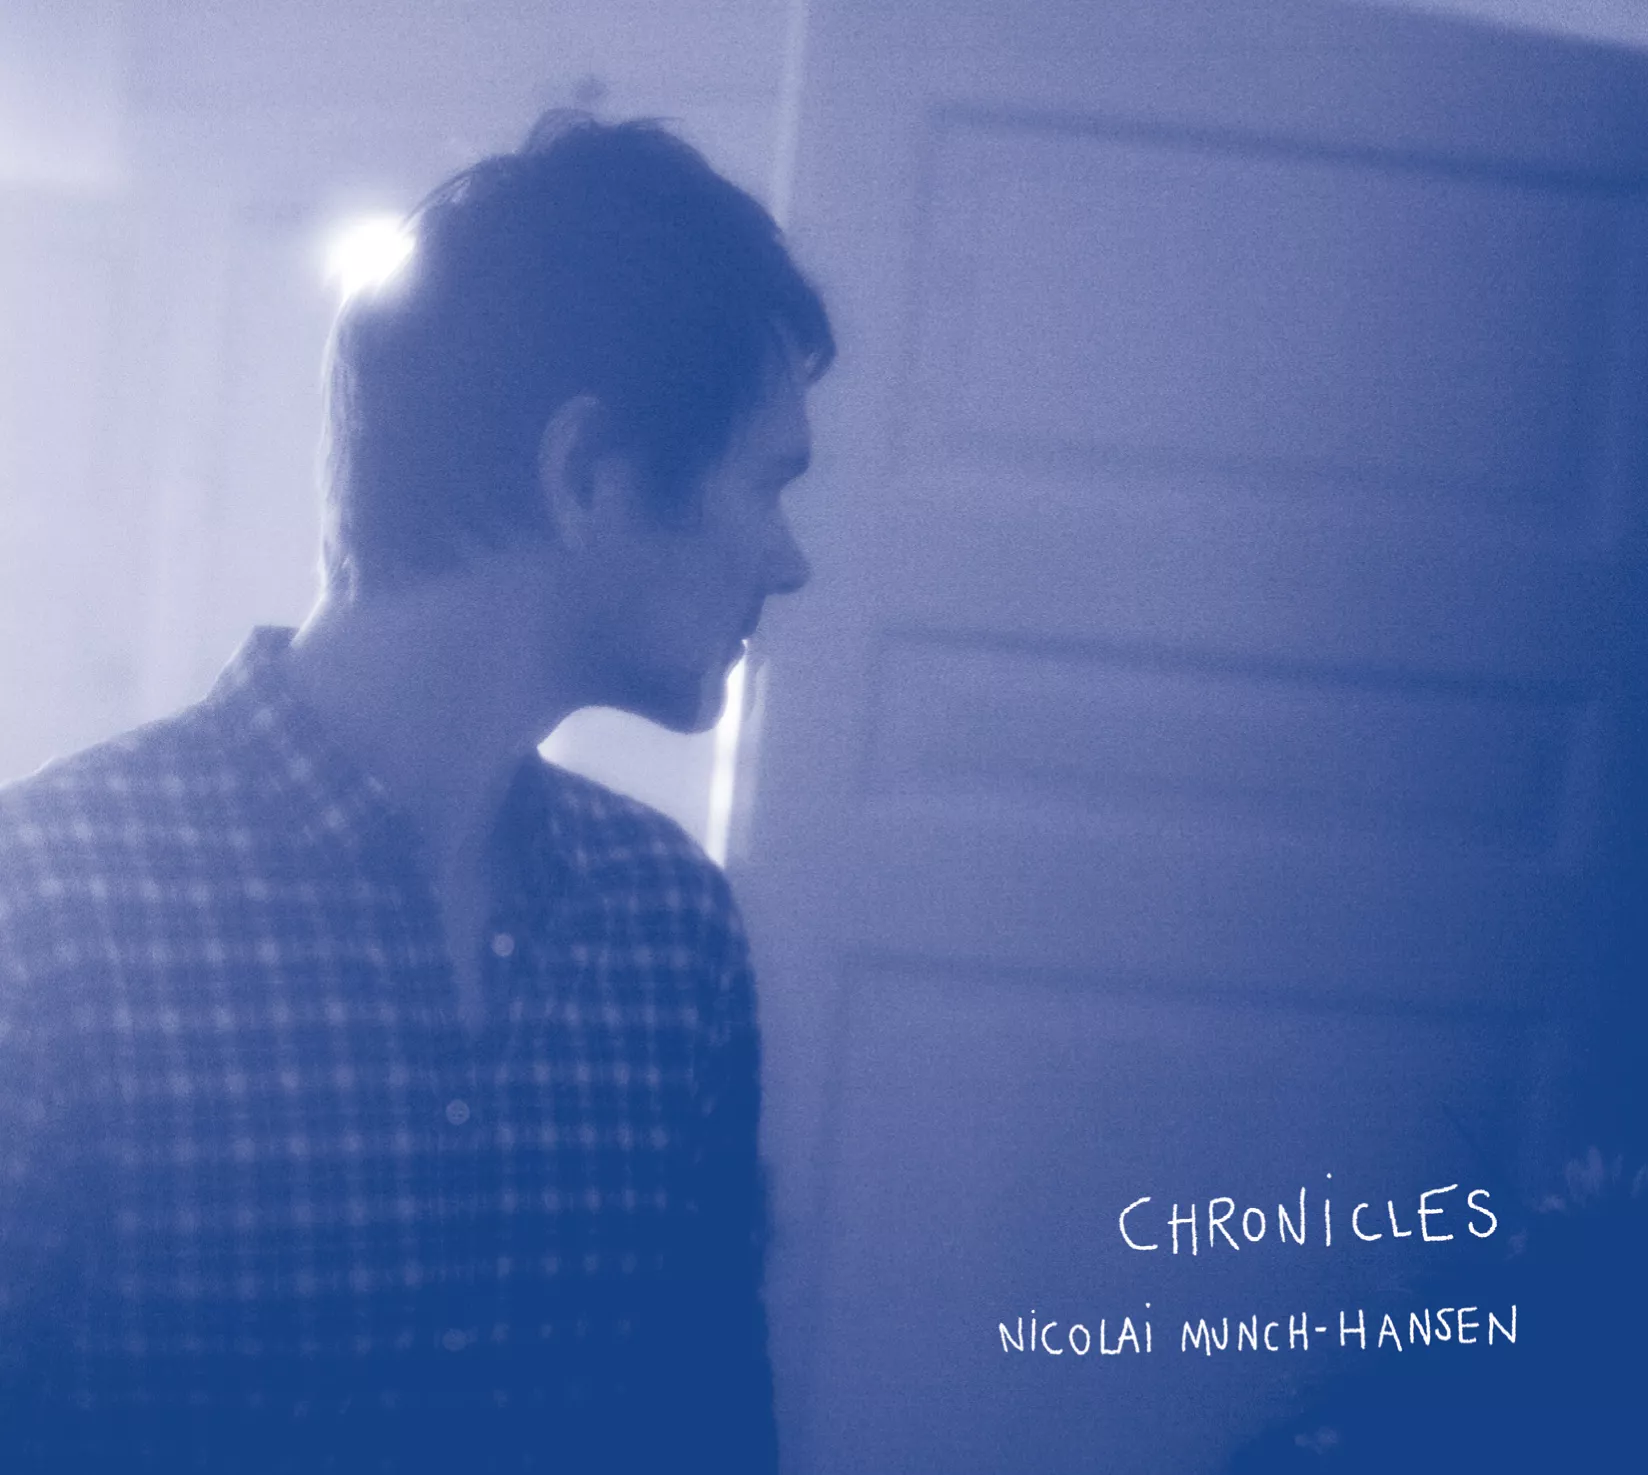 Chronicles - Nicolai Munch-Hansen